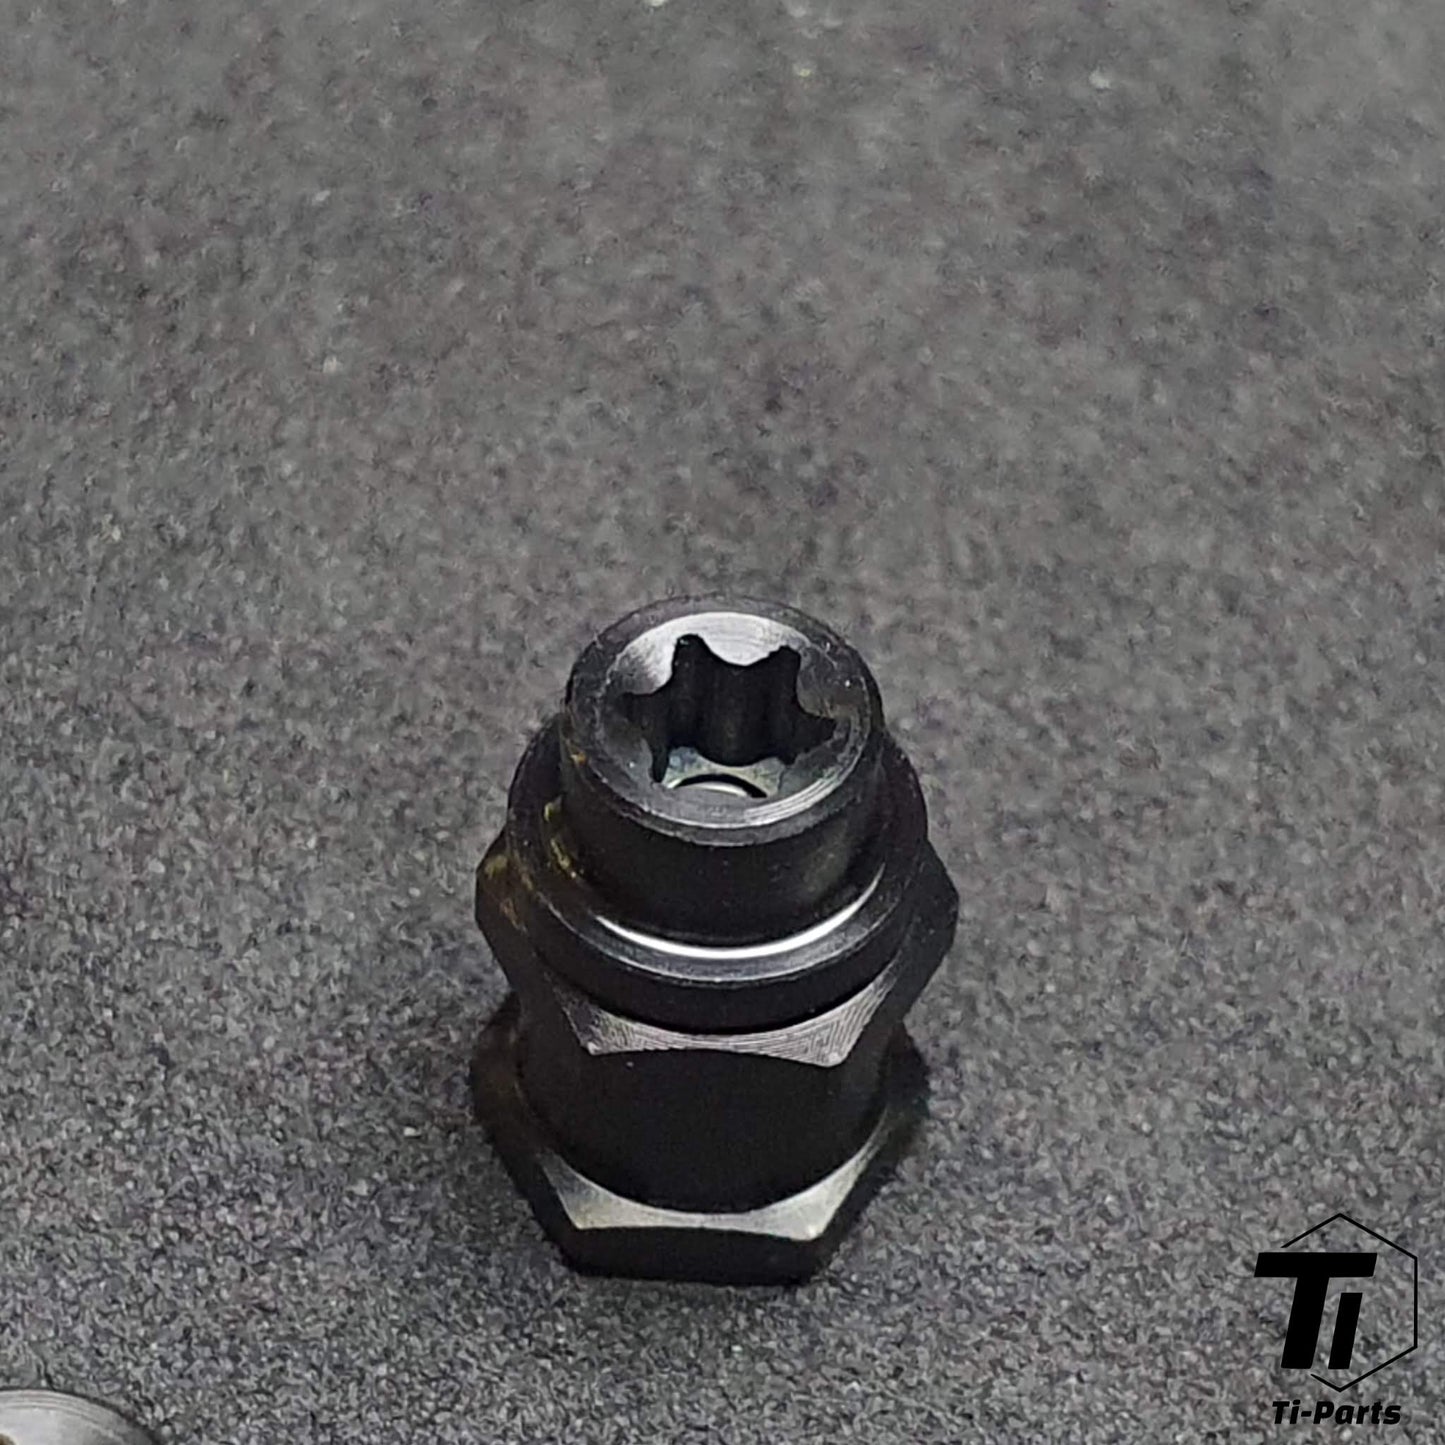 Titanium aksel til look pedal | Keo 2 Max Blade Carbon Ceramic Ti | Grade 29 Titanium Singapore